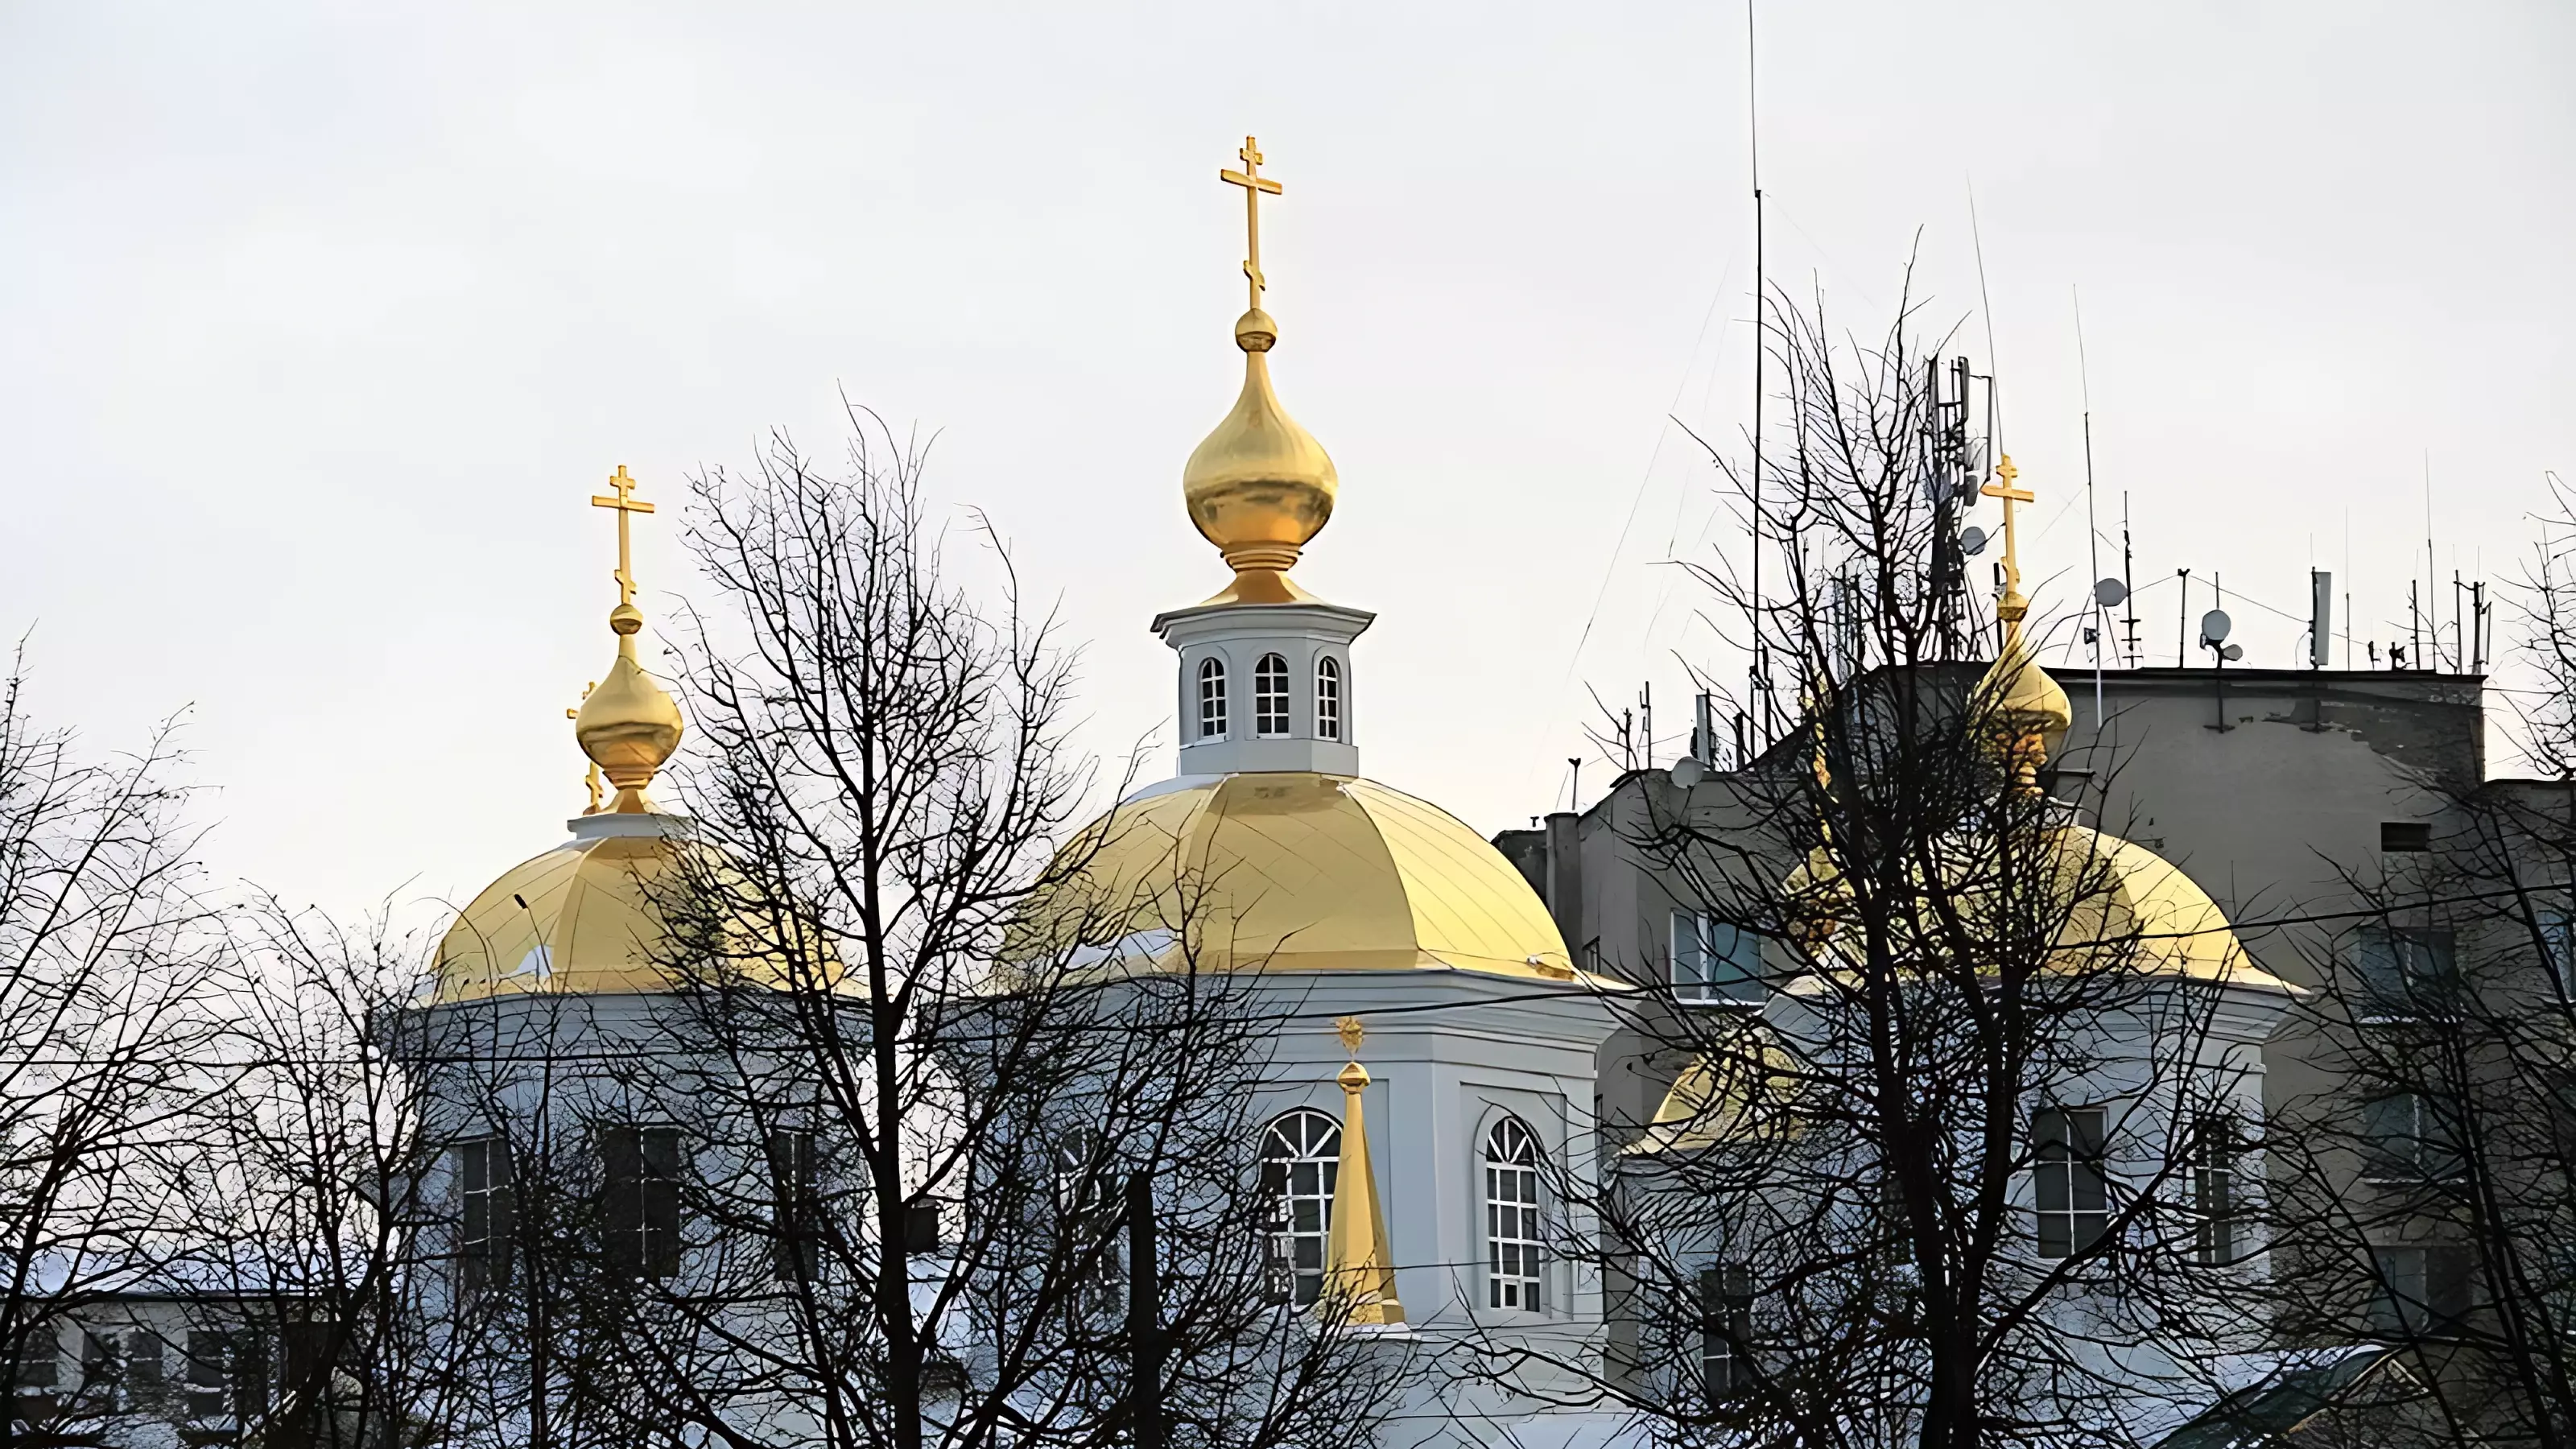 Бизнесмен Бояров прокомментировал «церковный» скандал в Нижнем Новгороде